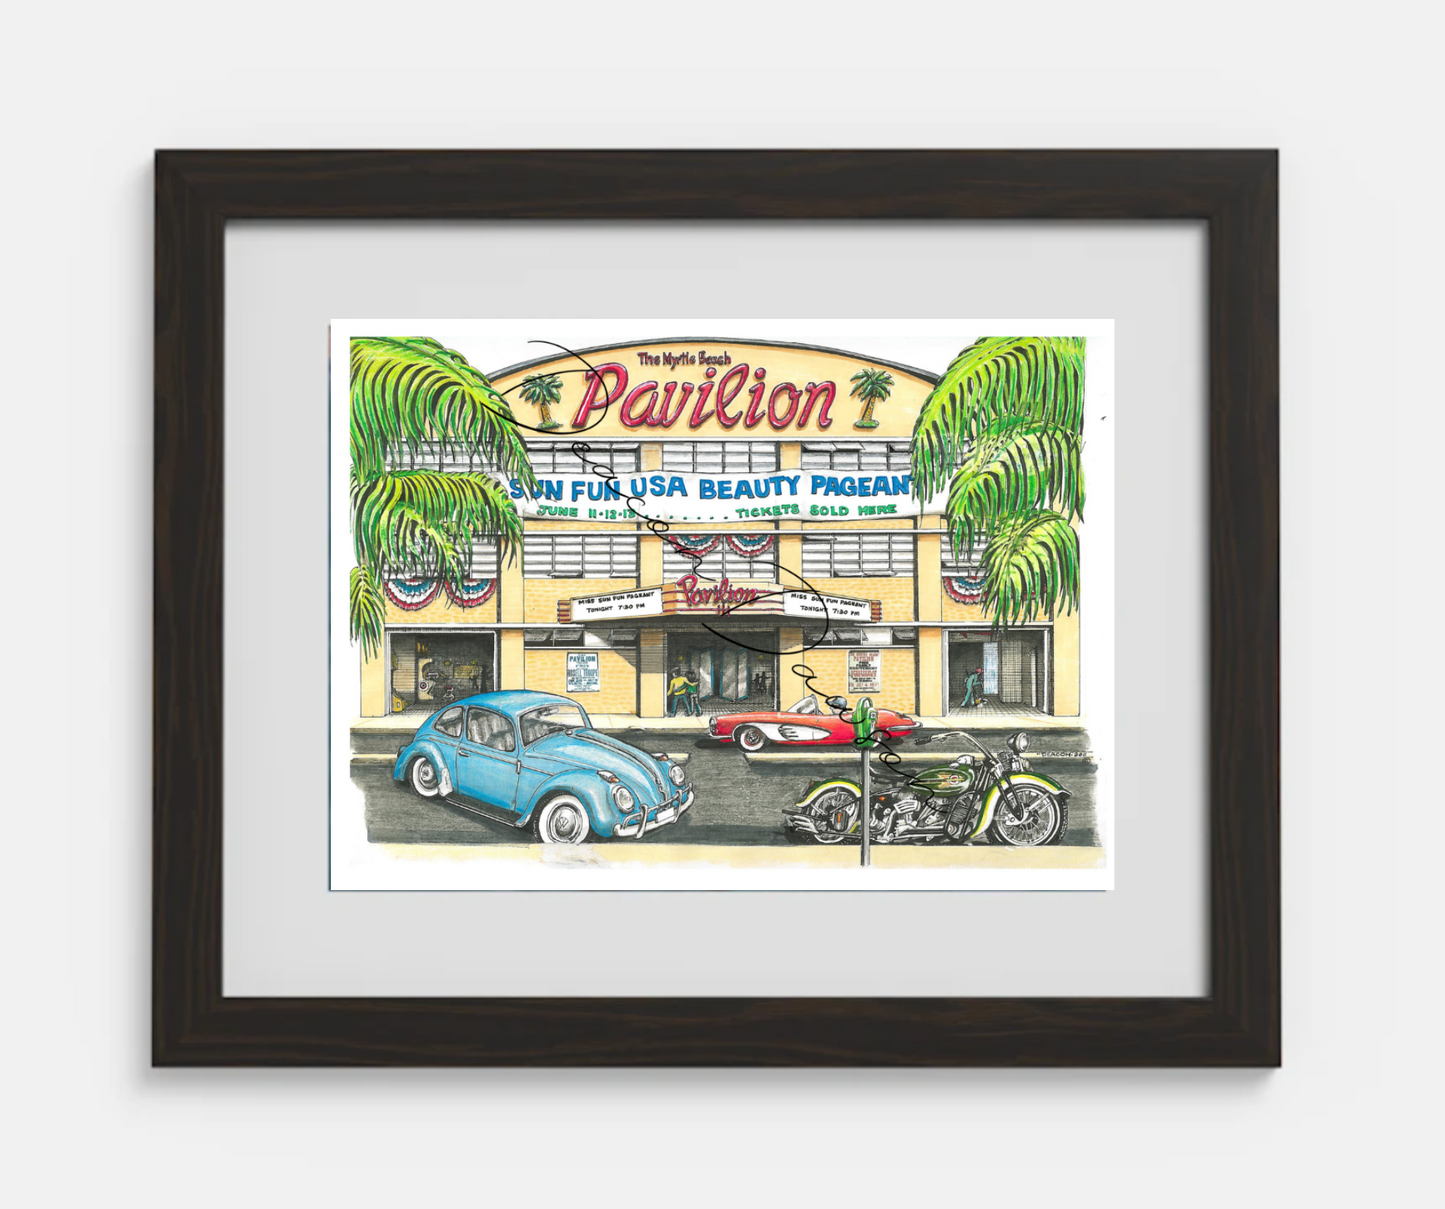 Myrtle Beach Pavilion Print Version 1